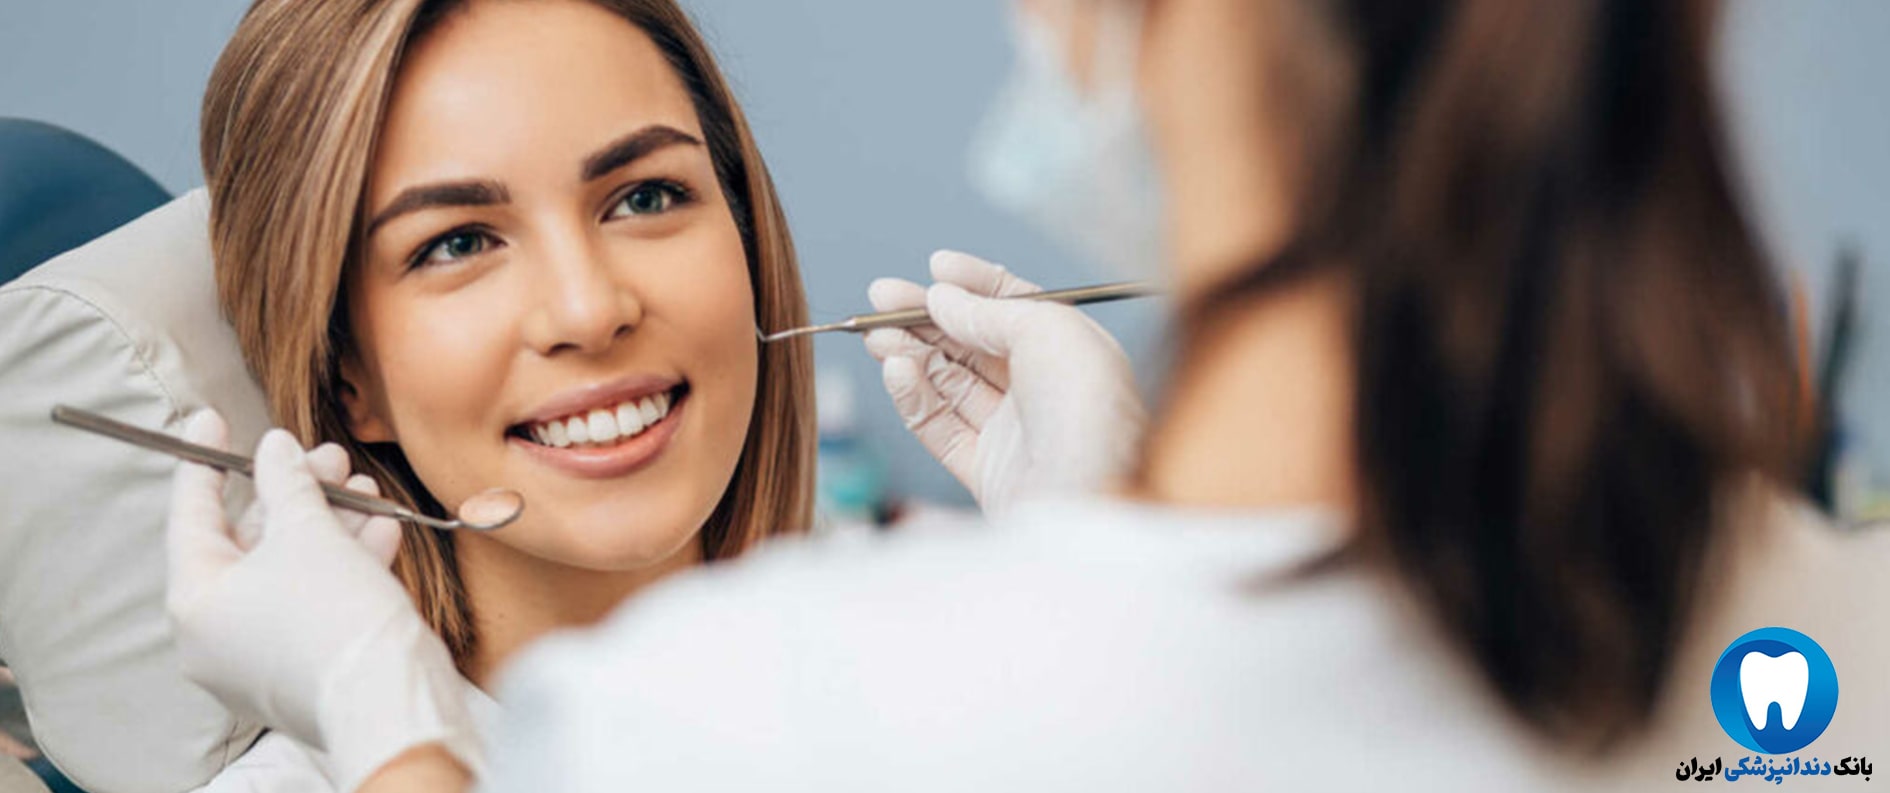 بهترین کلینیک دندانپزشکی زیبایی در شیراز